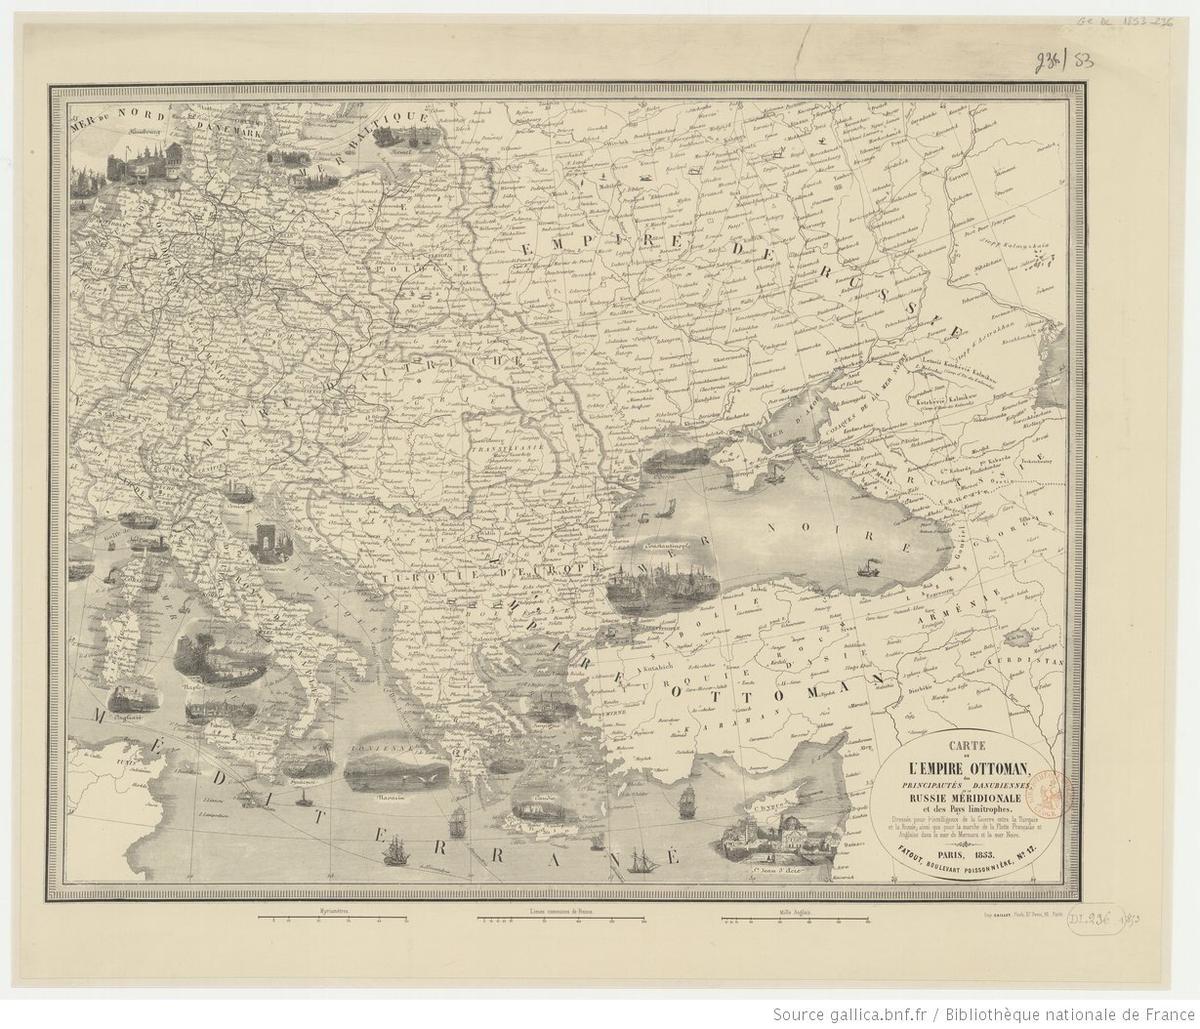 Французская карта XIX века, посвященная Восточной Европе и Малой Азии. Источник: gallica.bnf.fr